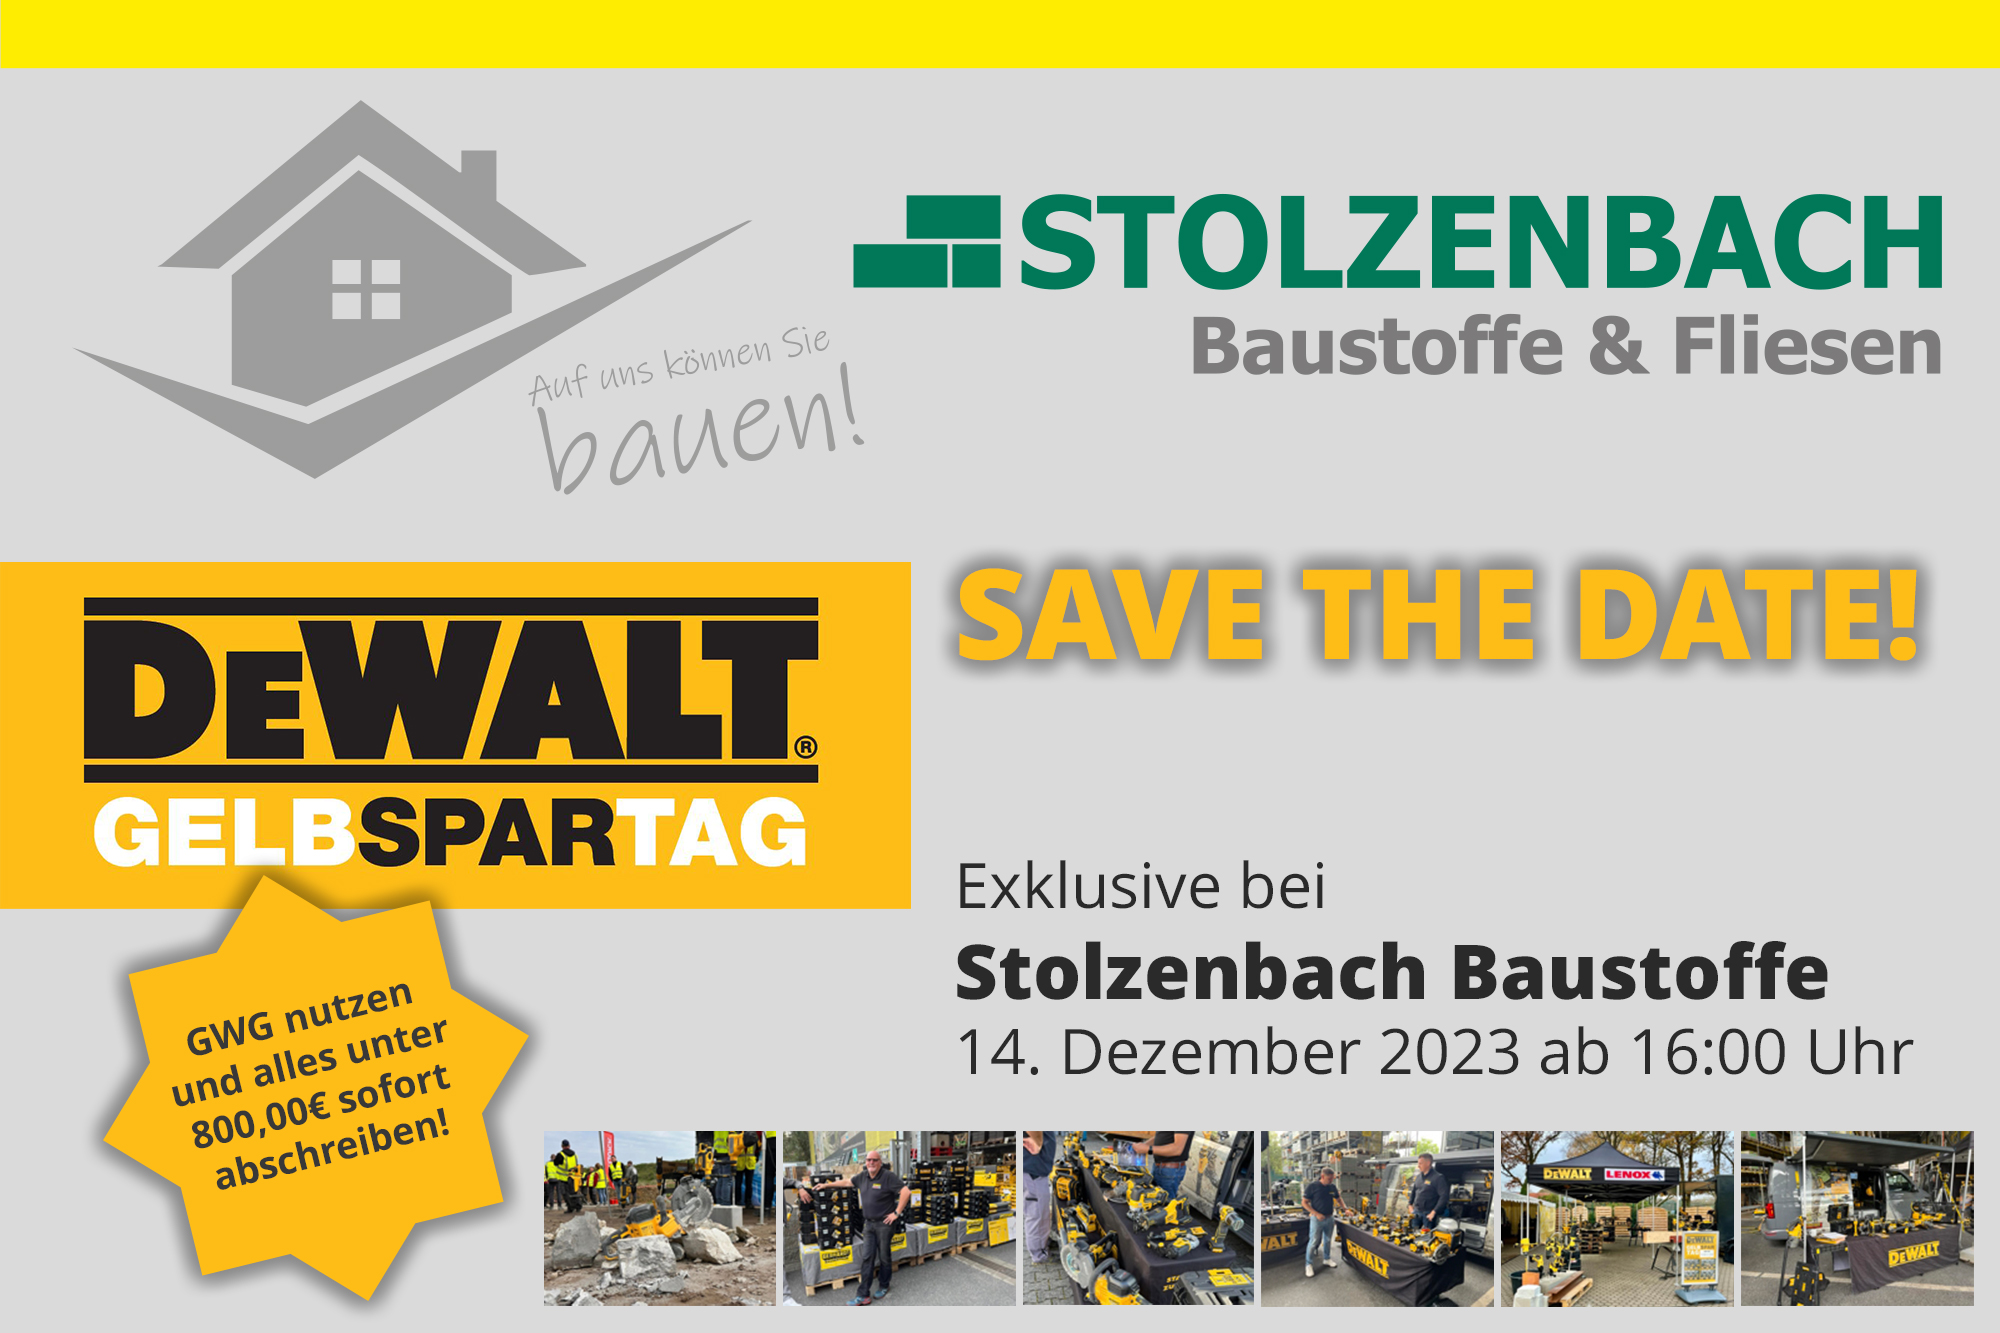 eWalt GelbSparTag 2023 bei Stolzenbach Baustoffe